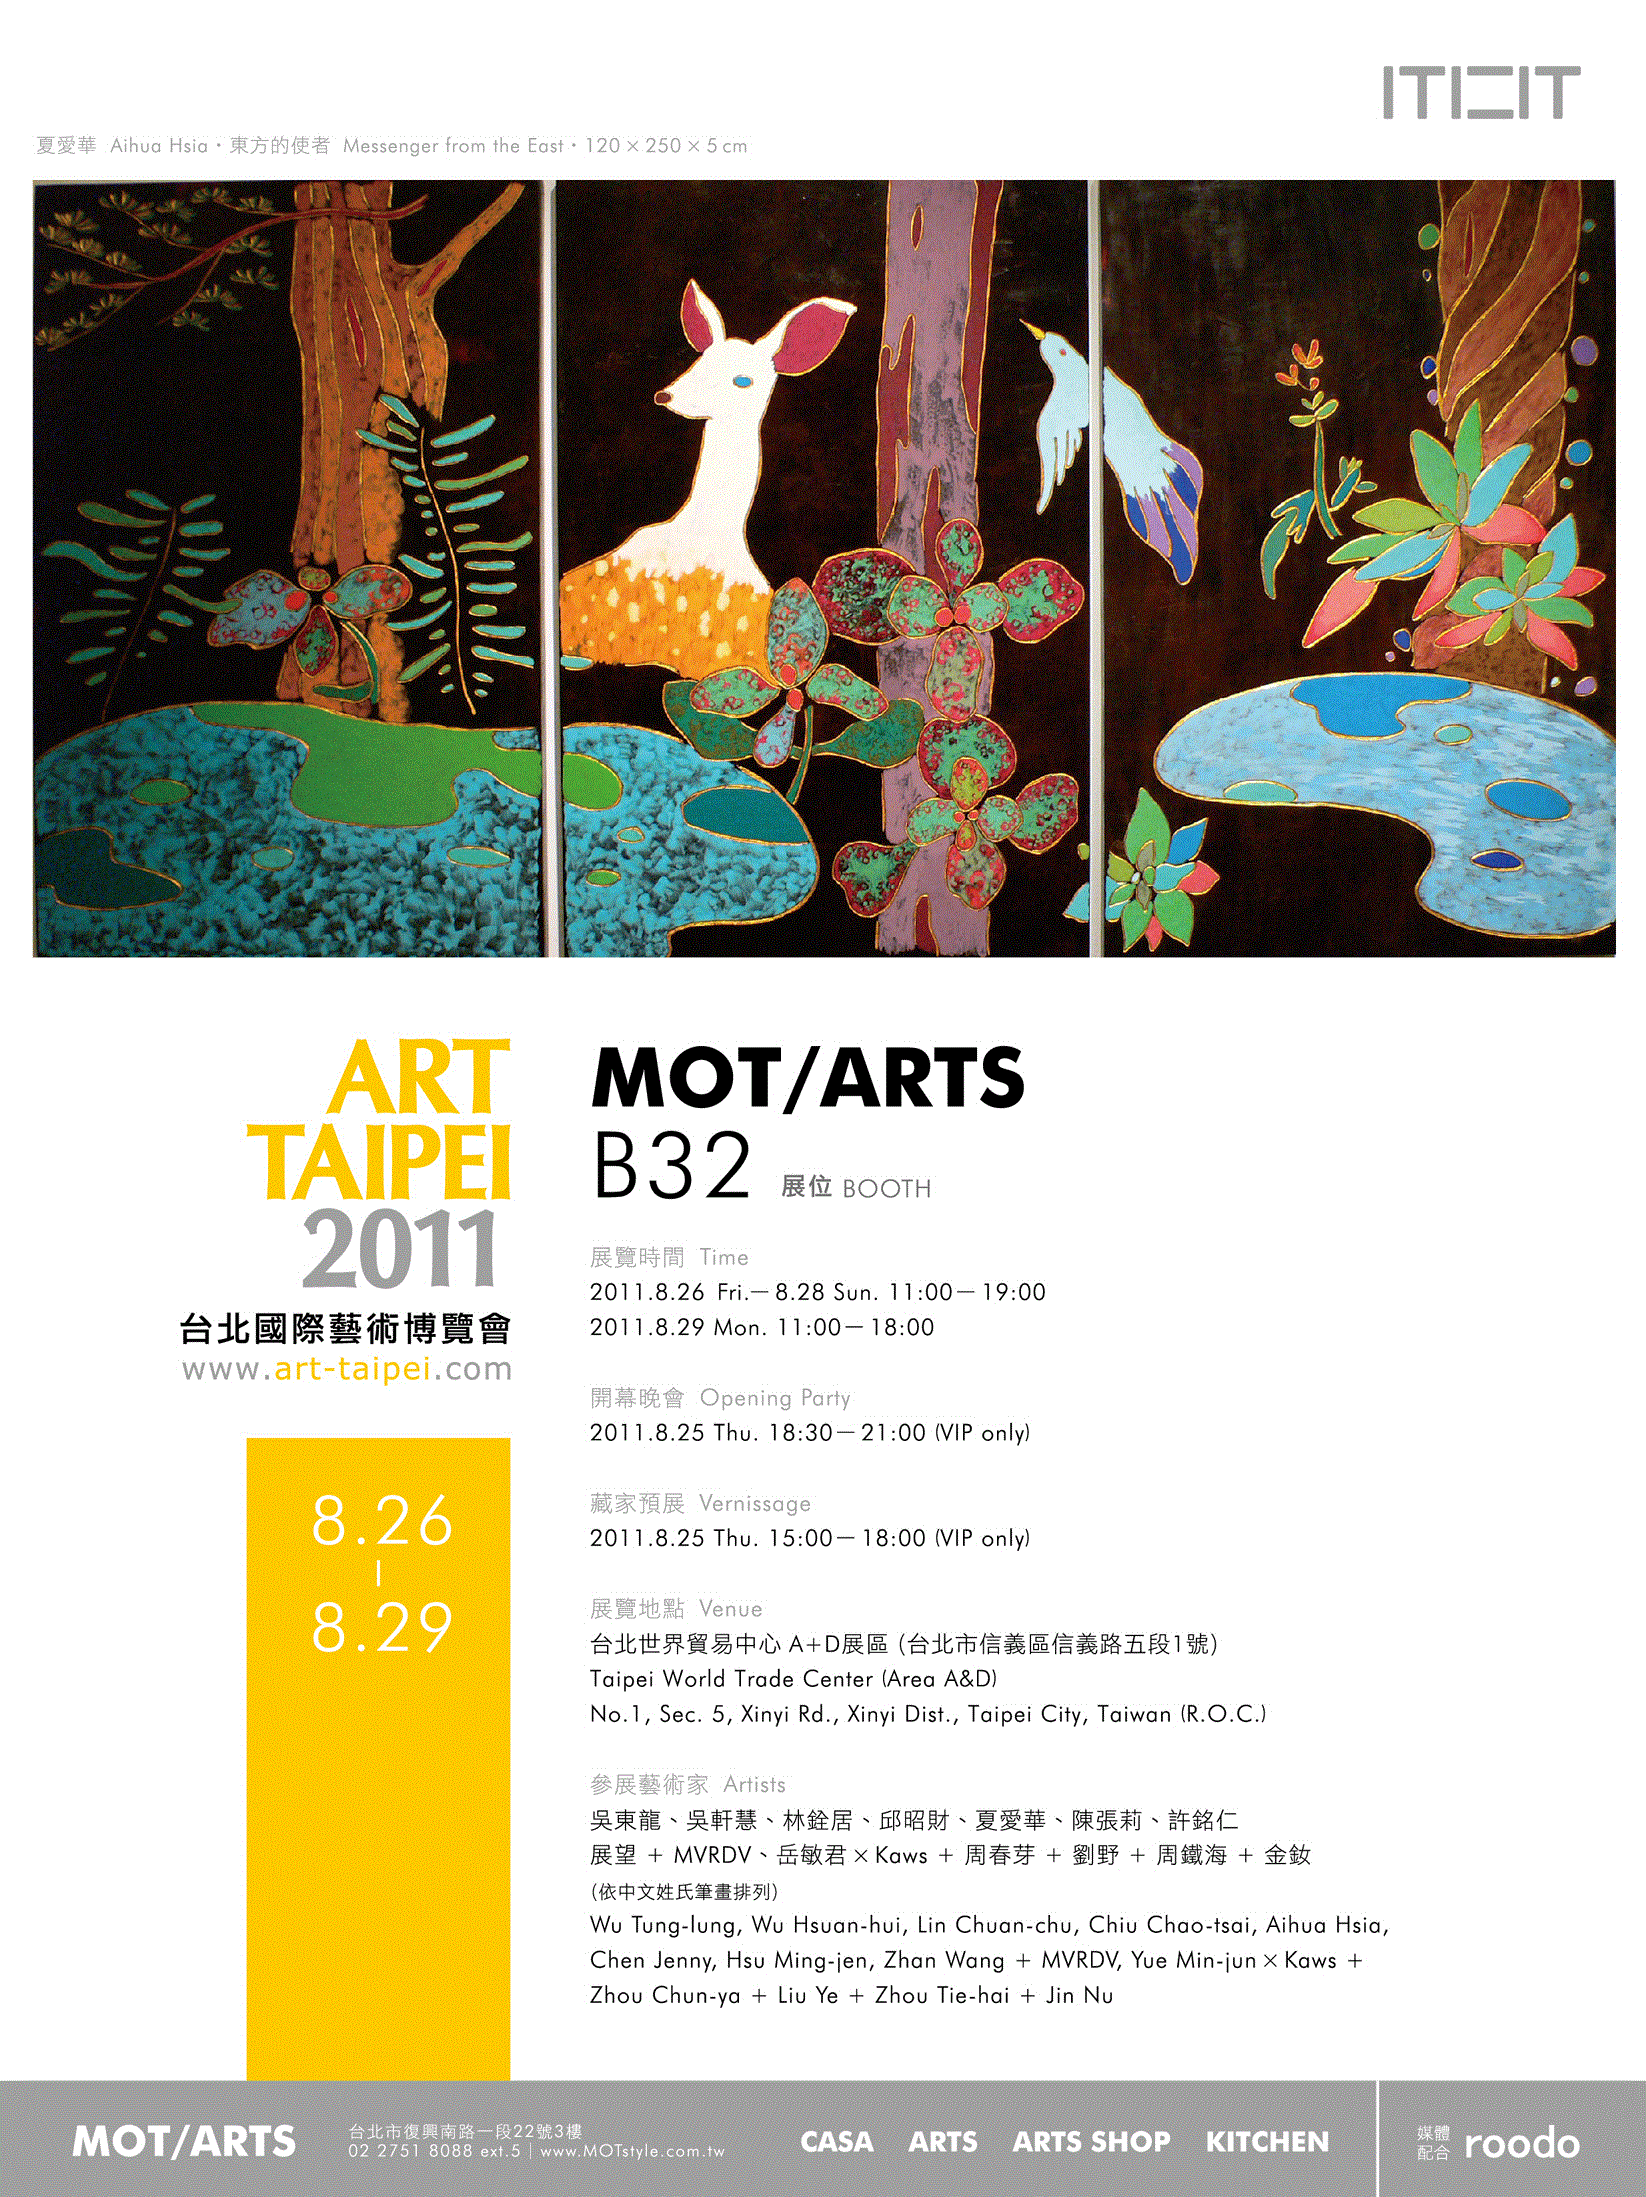 繼2008年的第一檔ART TOYS與五位中國當代藝術家岳敏君